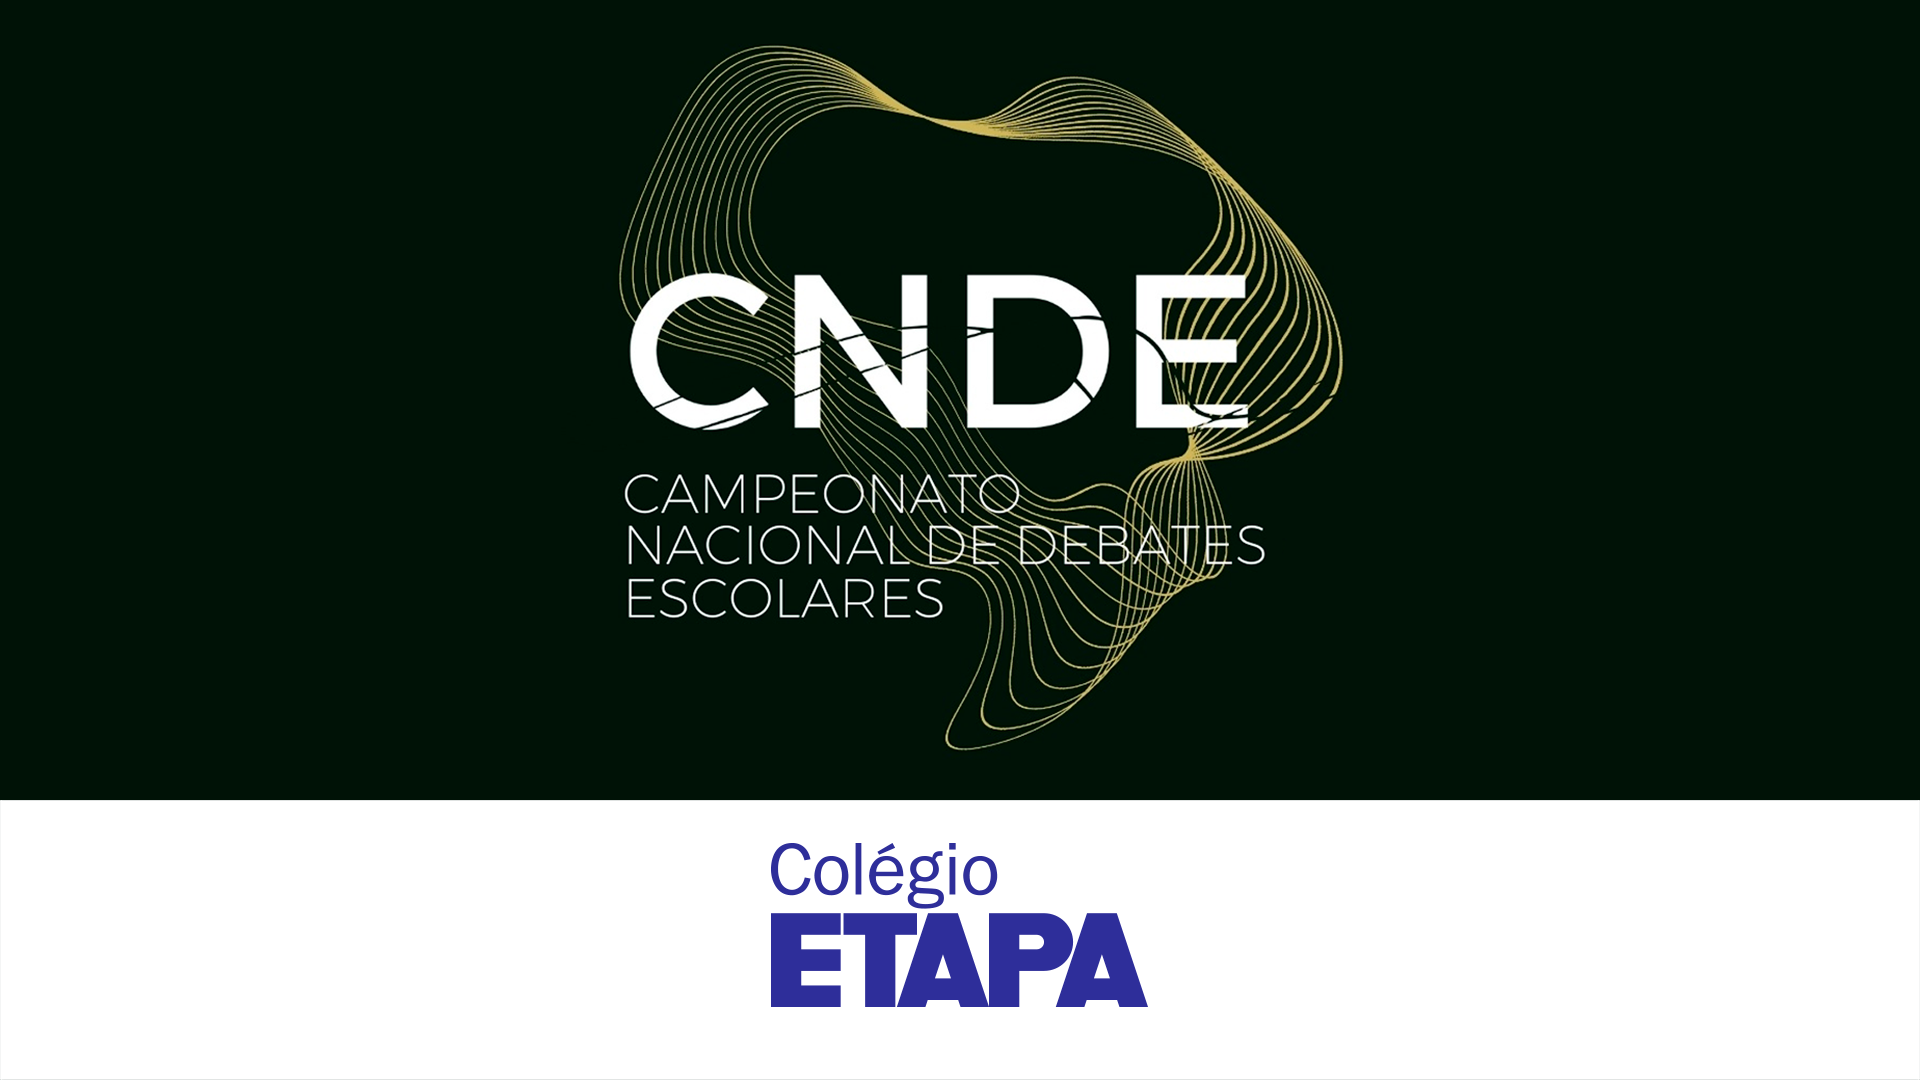 Durante a primeira participação do Colégio Etapa no torneio, três de nossos alunos integraram o ranking dos 20 melhores debatedores do CNDE 2022.